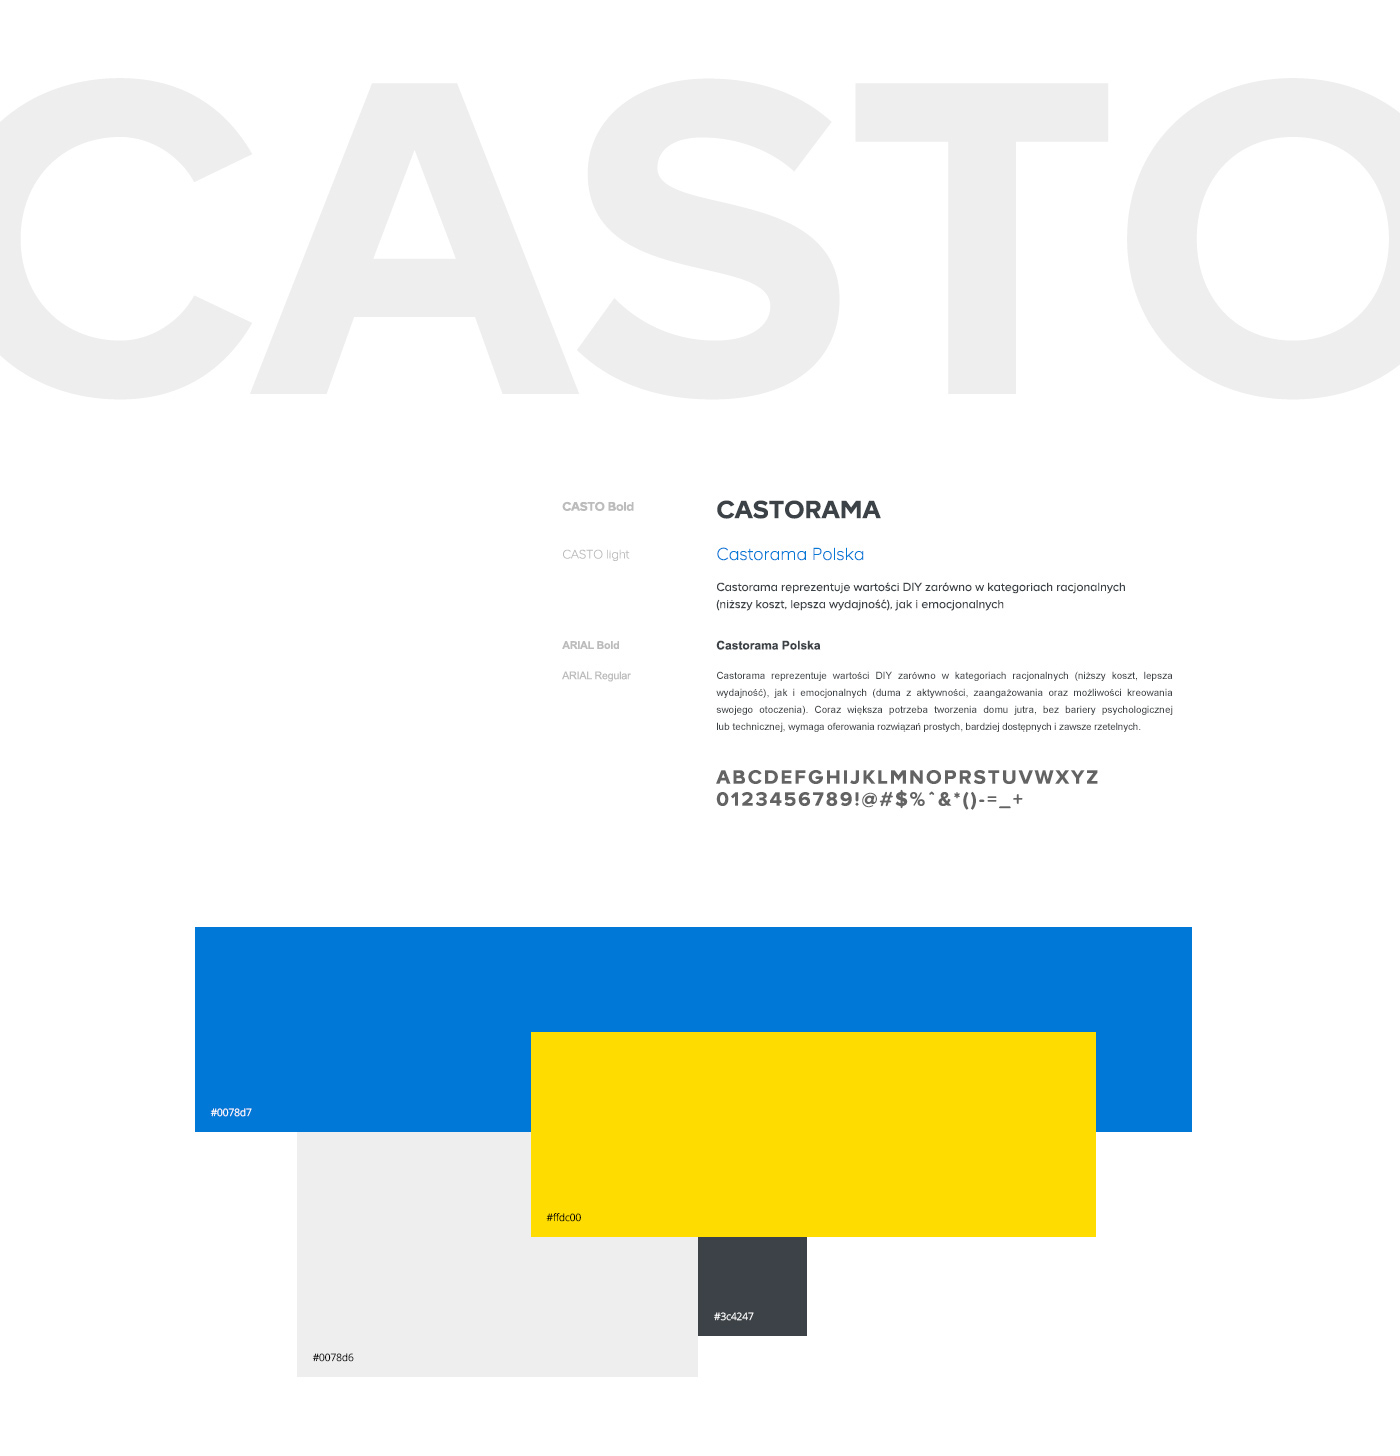 castorama Website redesign design polska Responsive rwd e-commerce shop